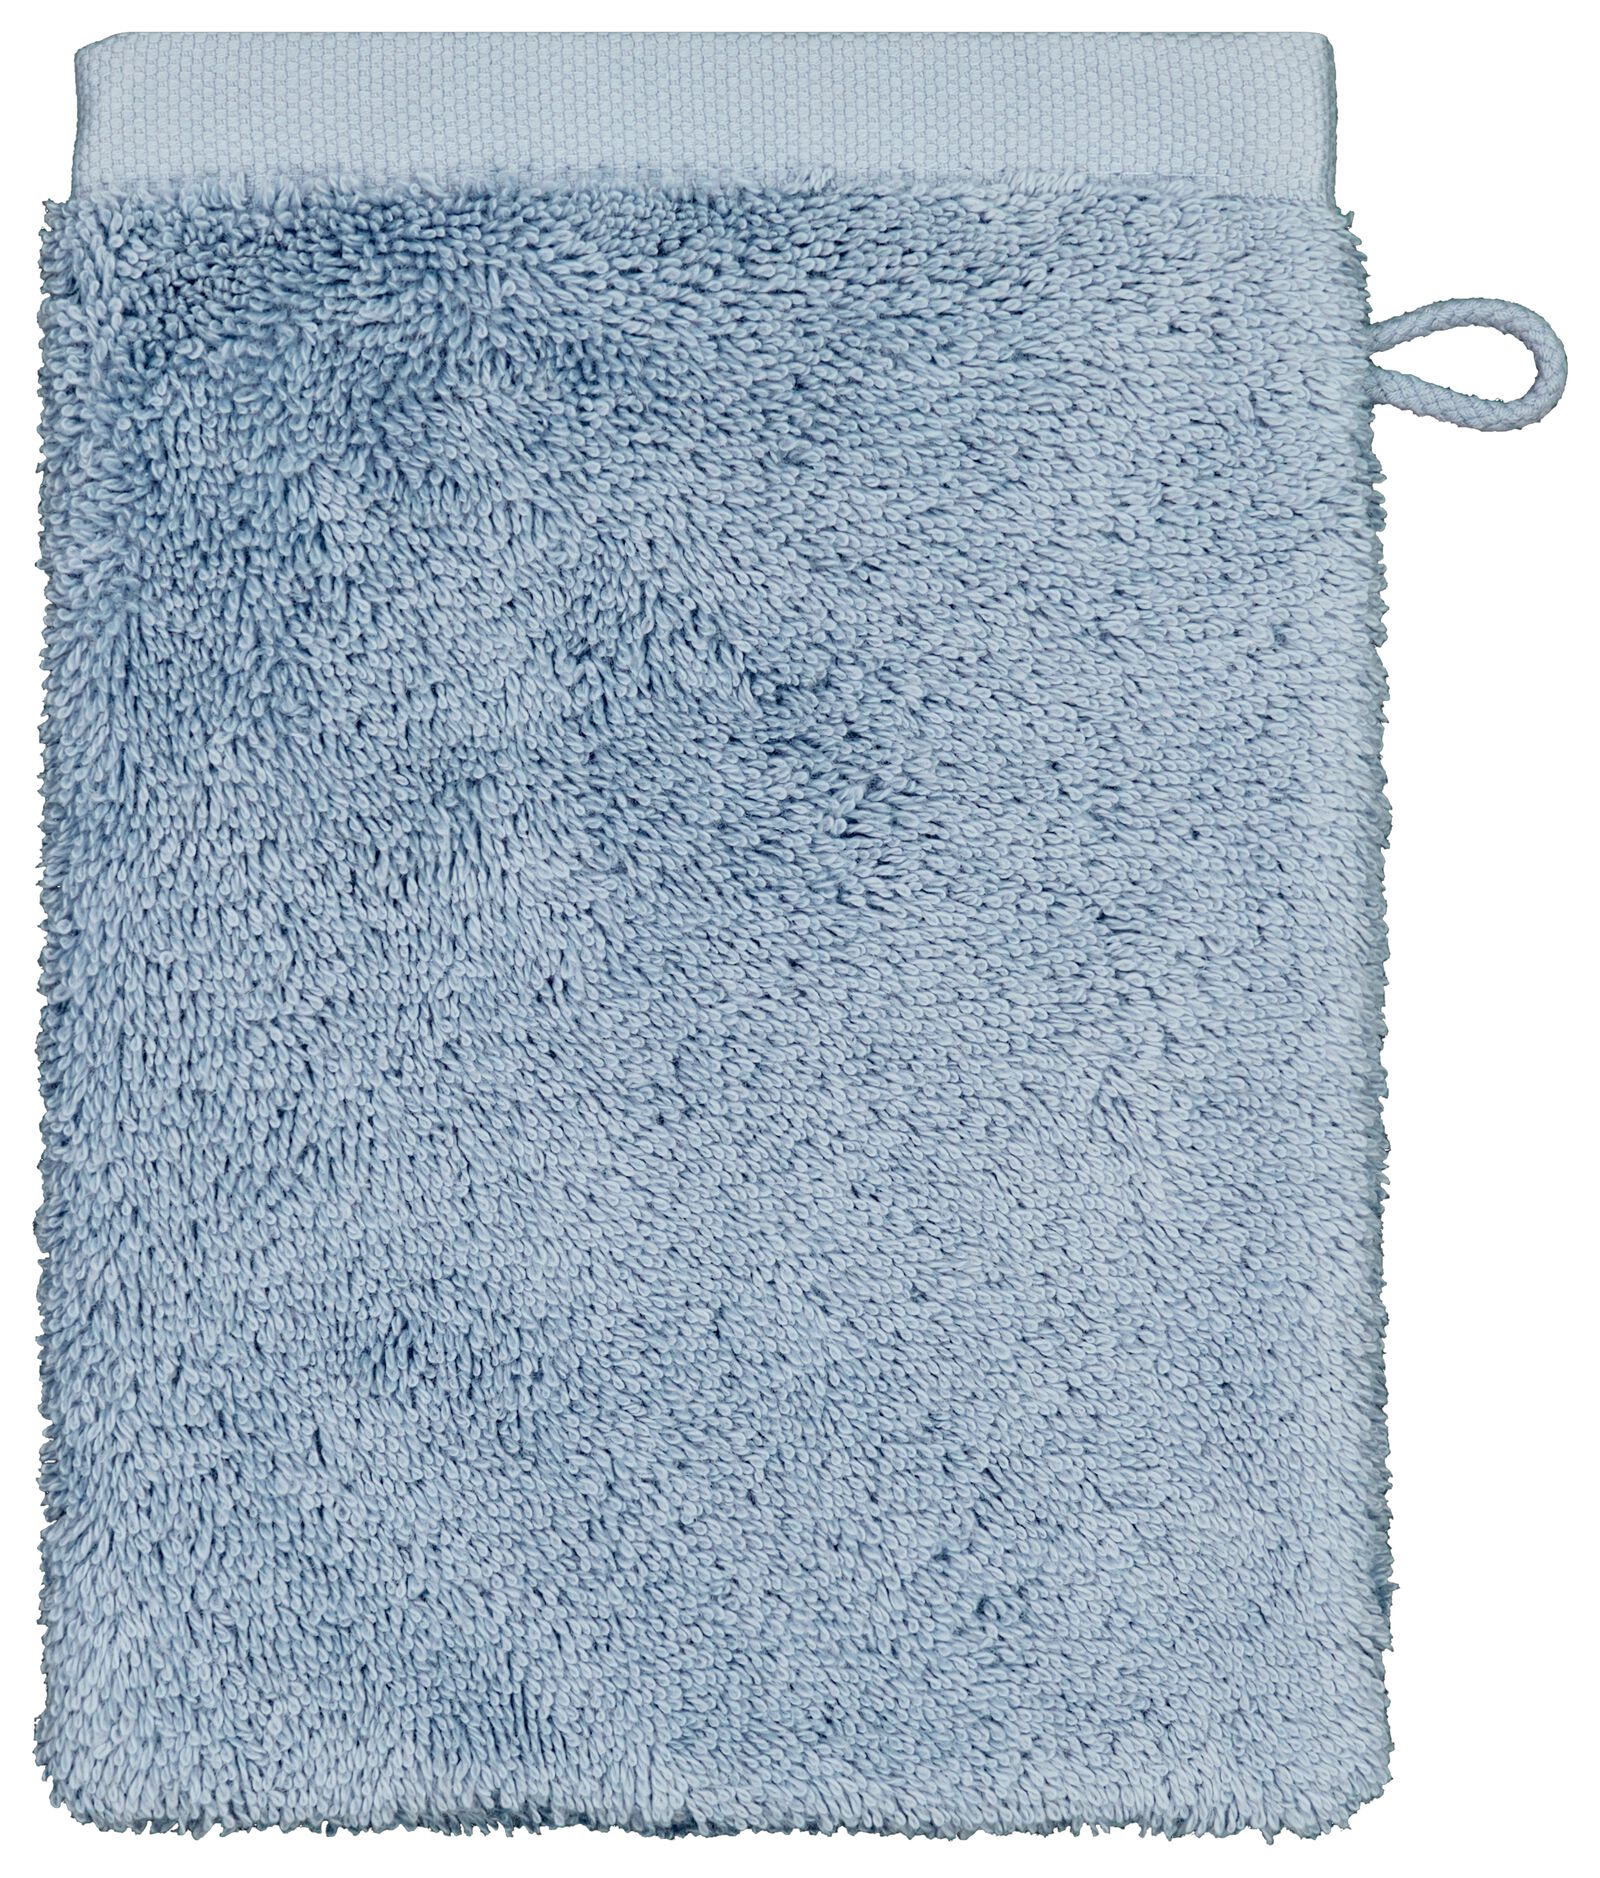 gant de toilette qualité hôtelière extra douce bleu glacier - 5270120 - HEMA